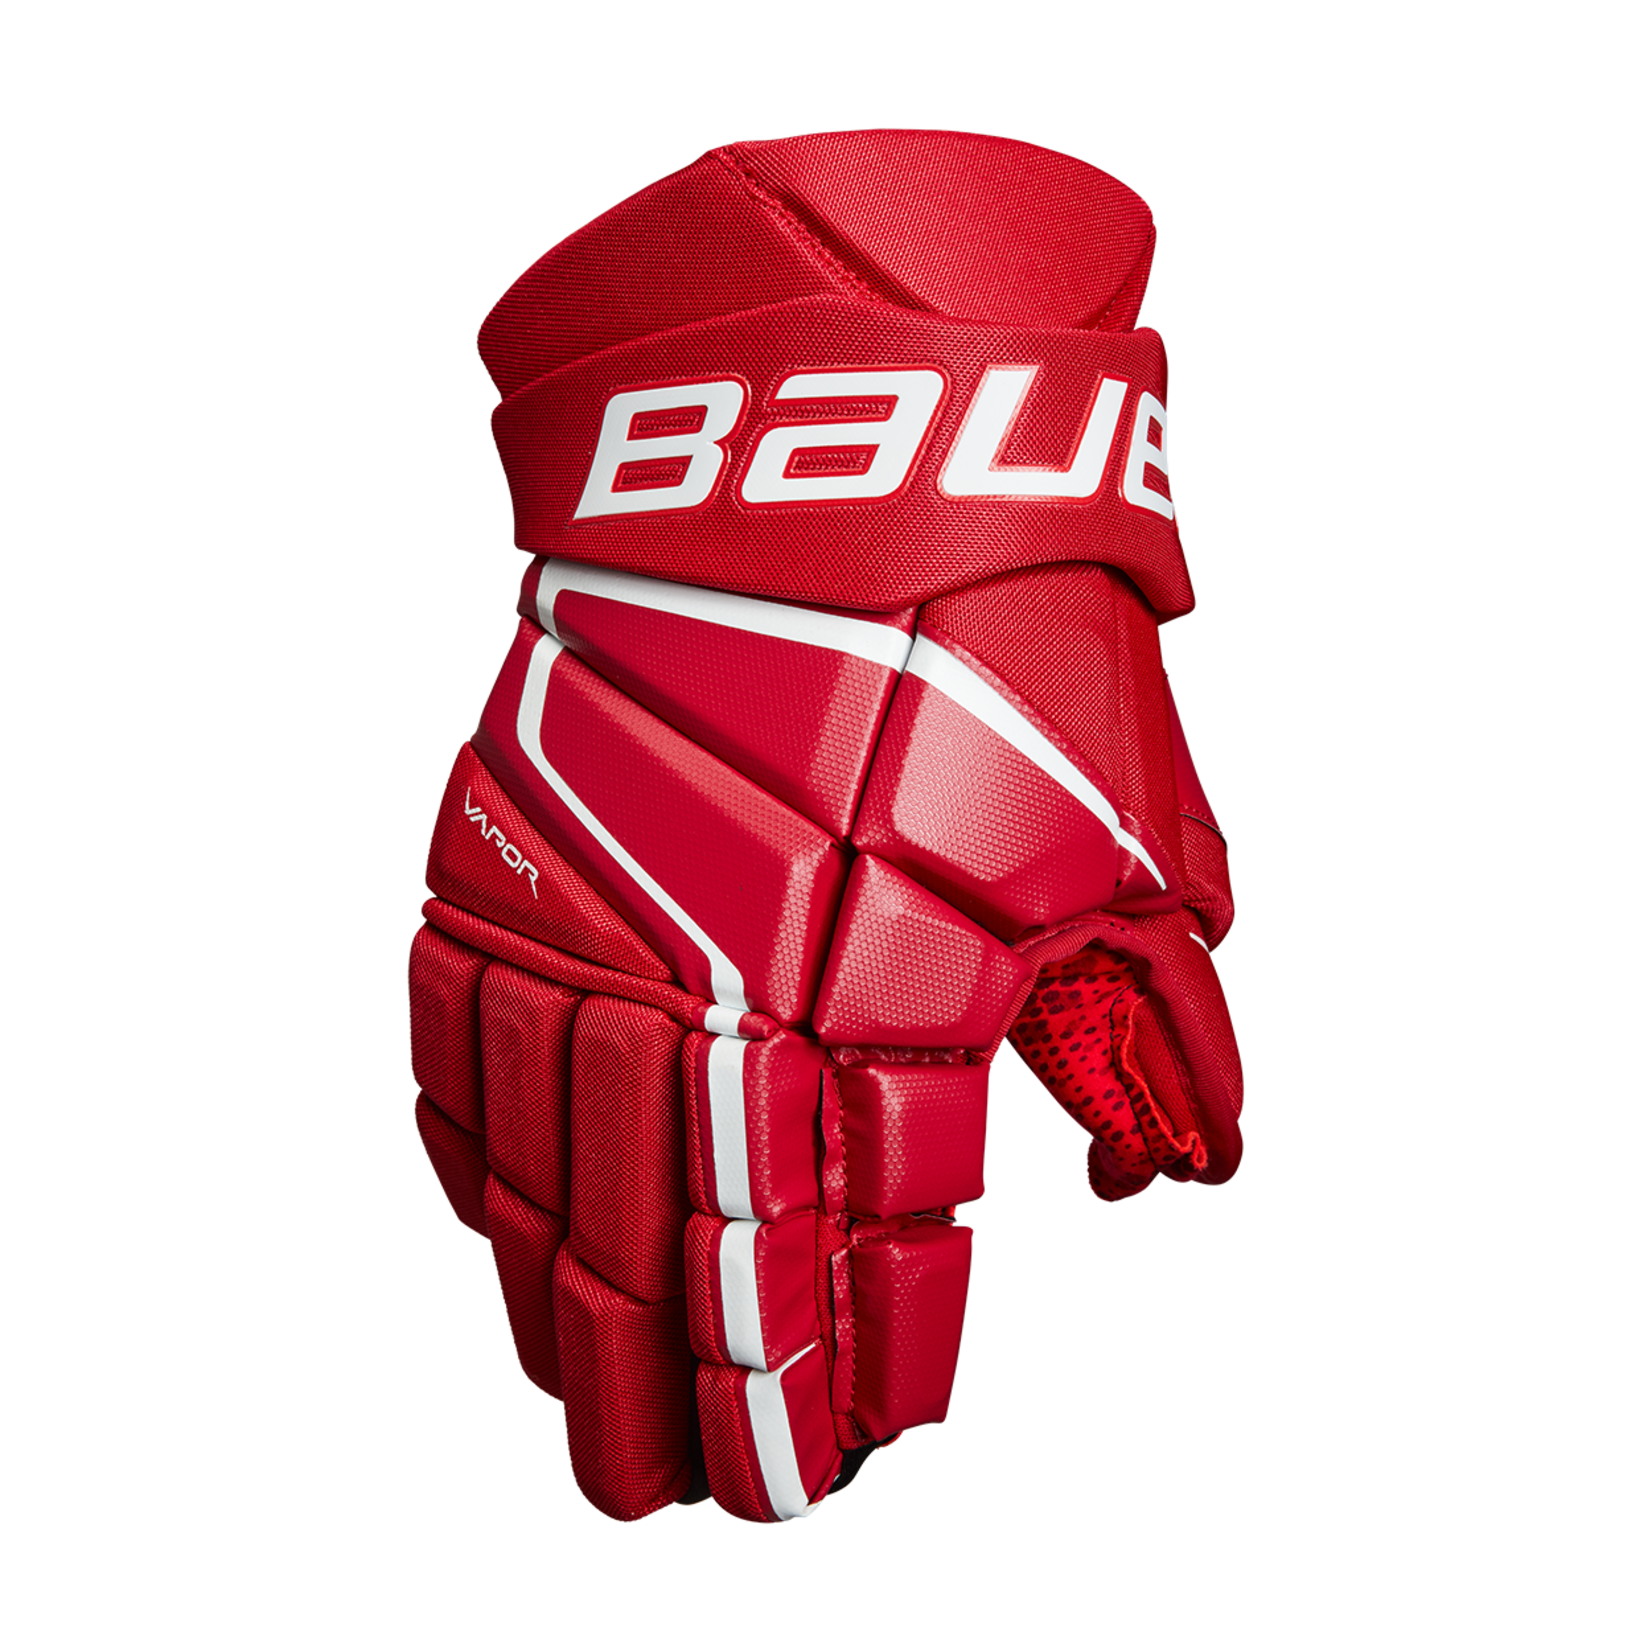 Bauer Bauer Hockey Gloves, Vapor 3X, Intermediate